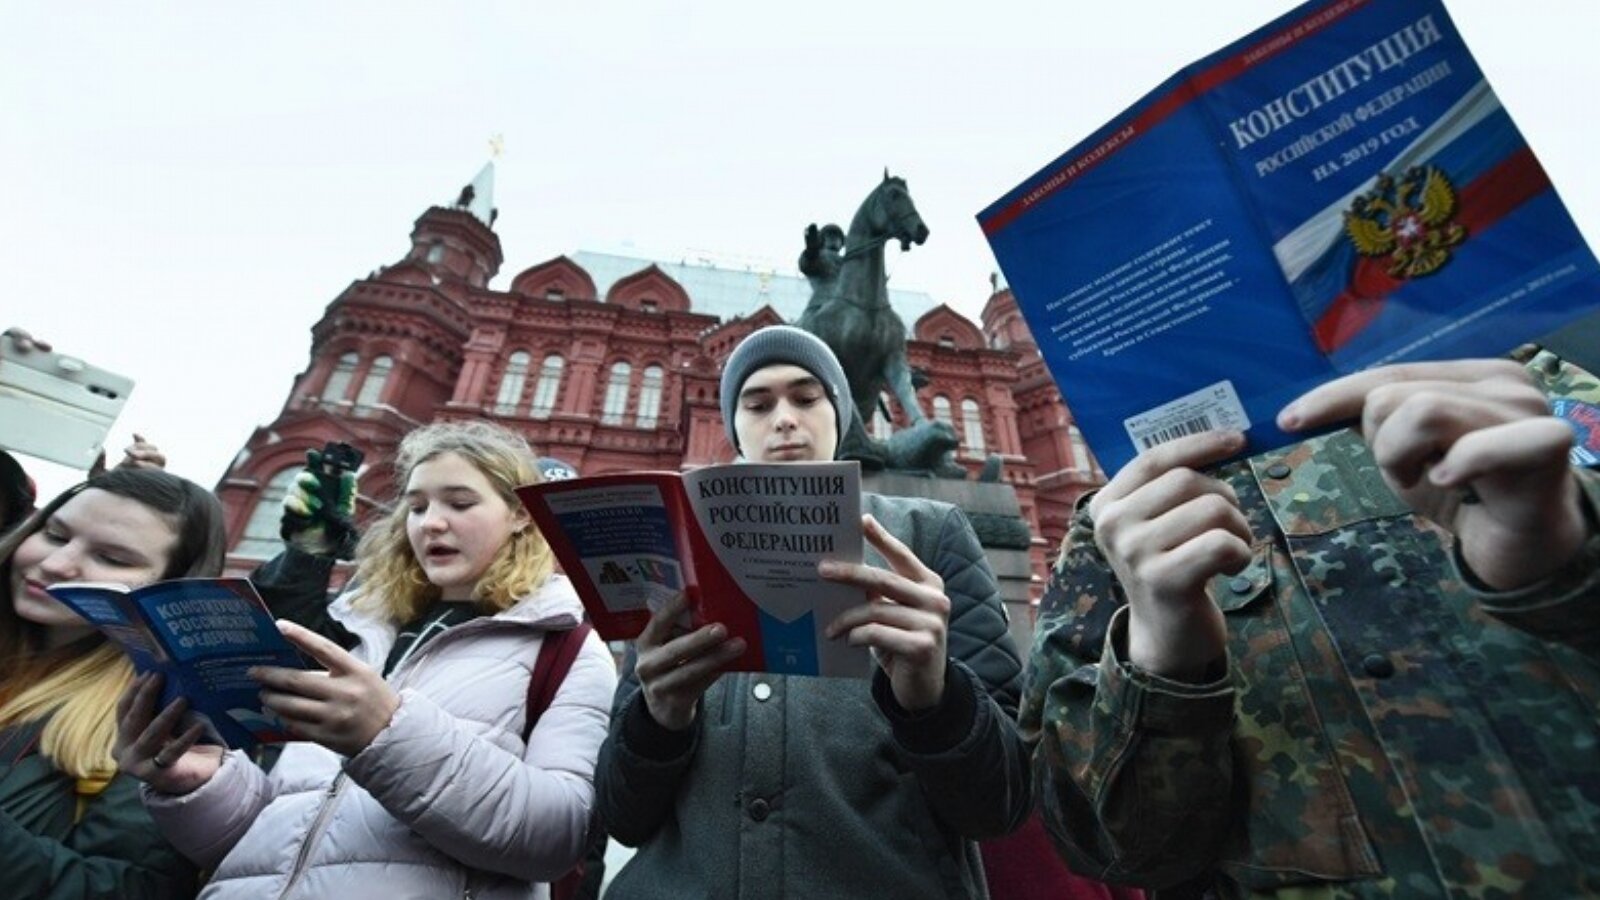 Конституция без изменений. Человек читает Конституцию. Молодежь голосует. Люди голосуют. Человек и Конституция РФ.